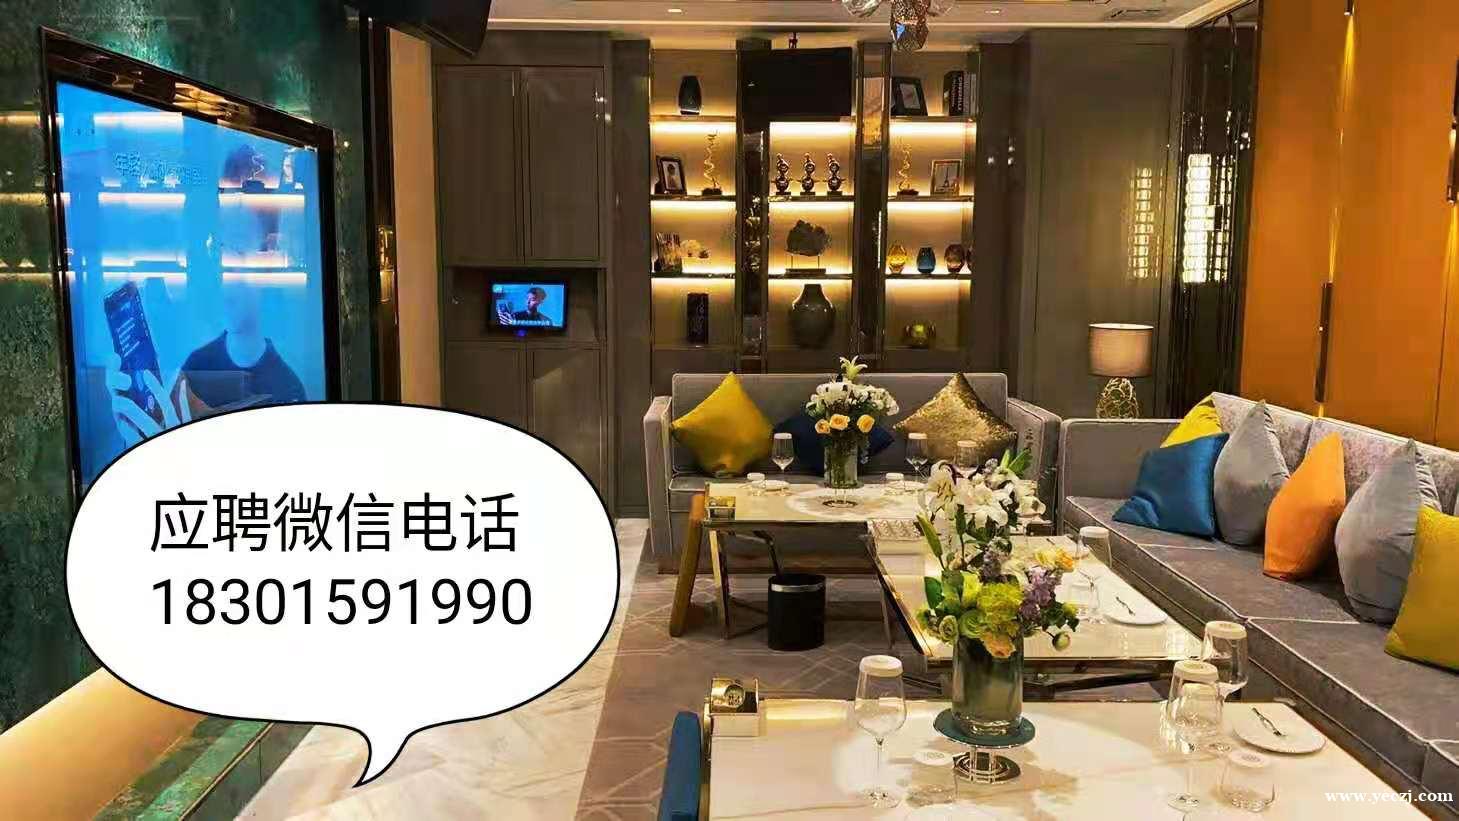 长沙日结最高的夜总会招聘模特-1500场直招 公司提供酒店住宿